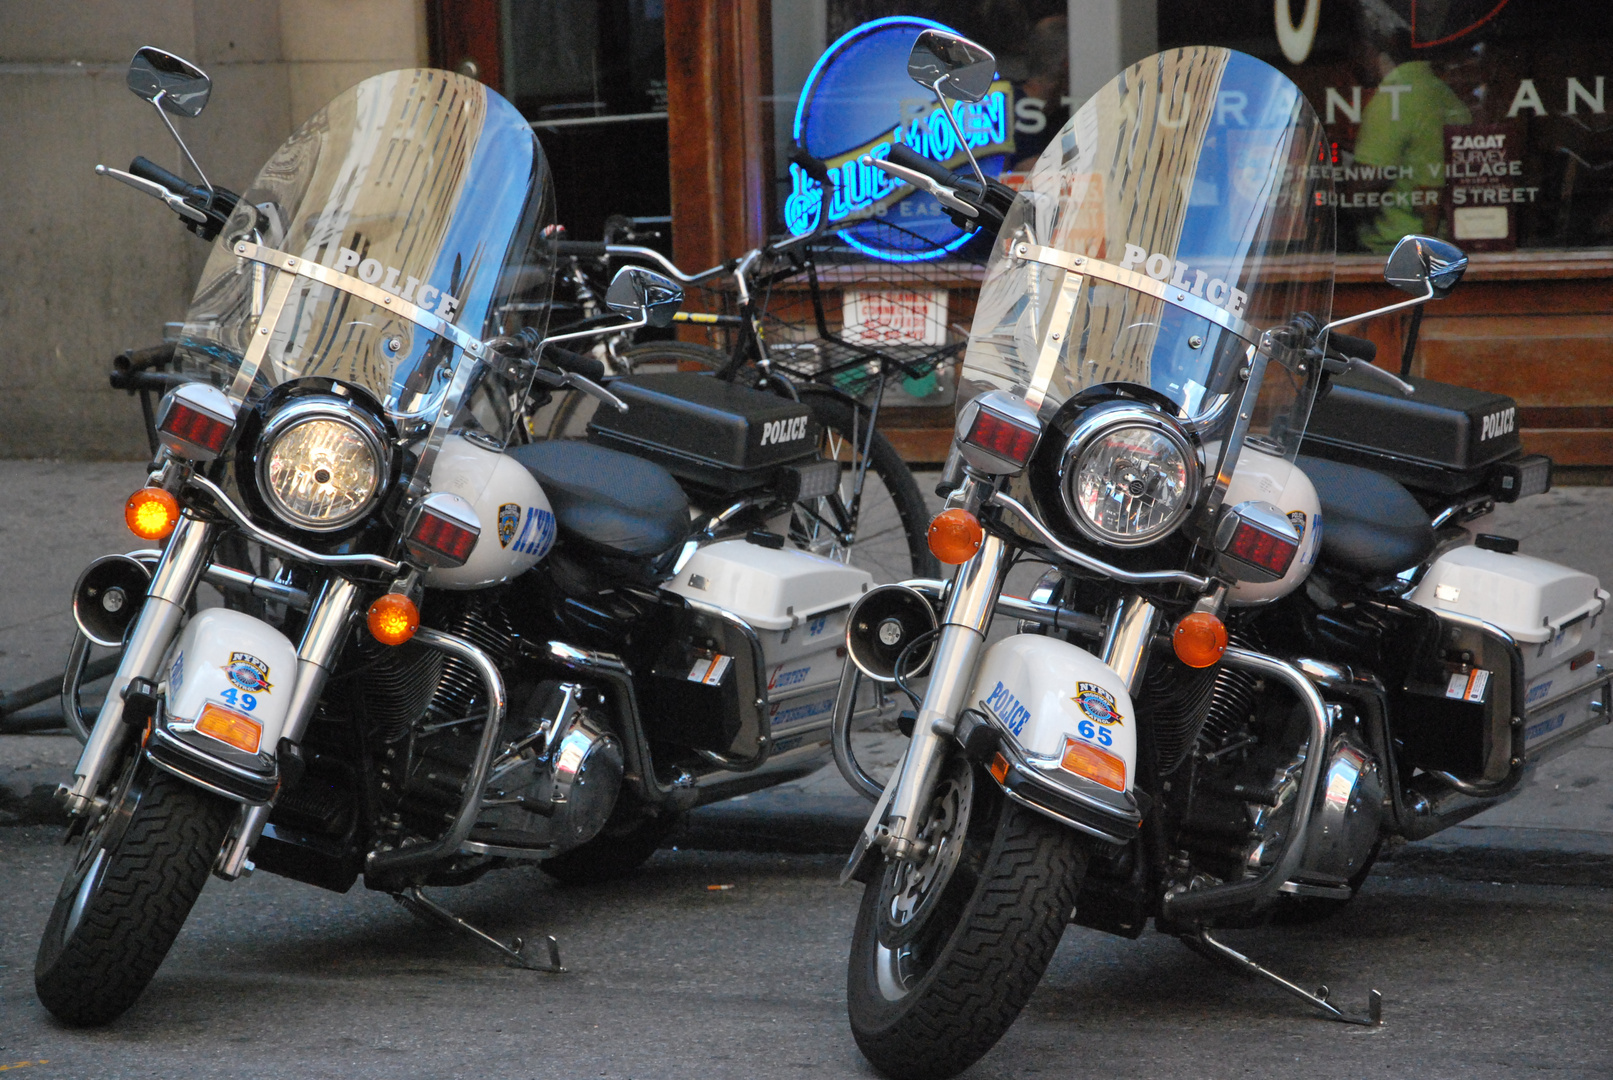 Polizeimotorräder in New York